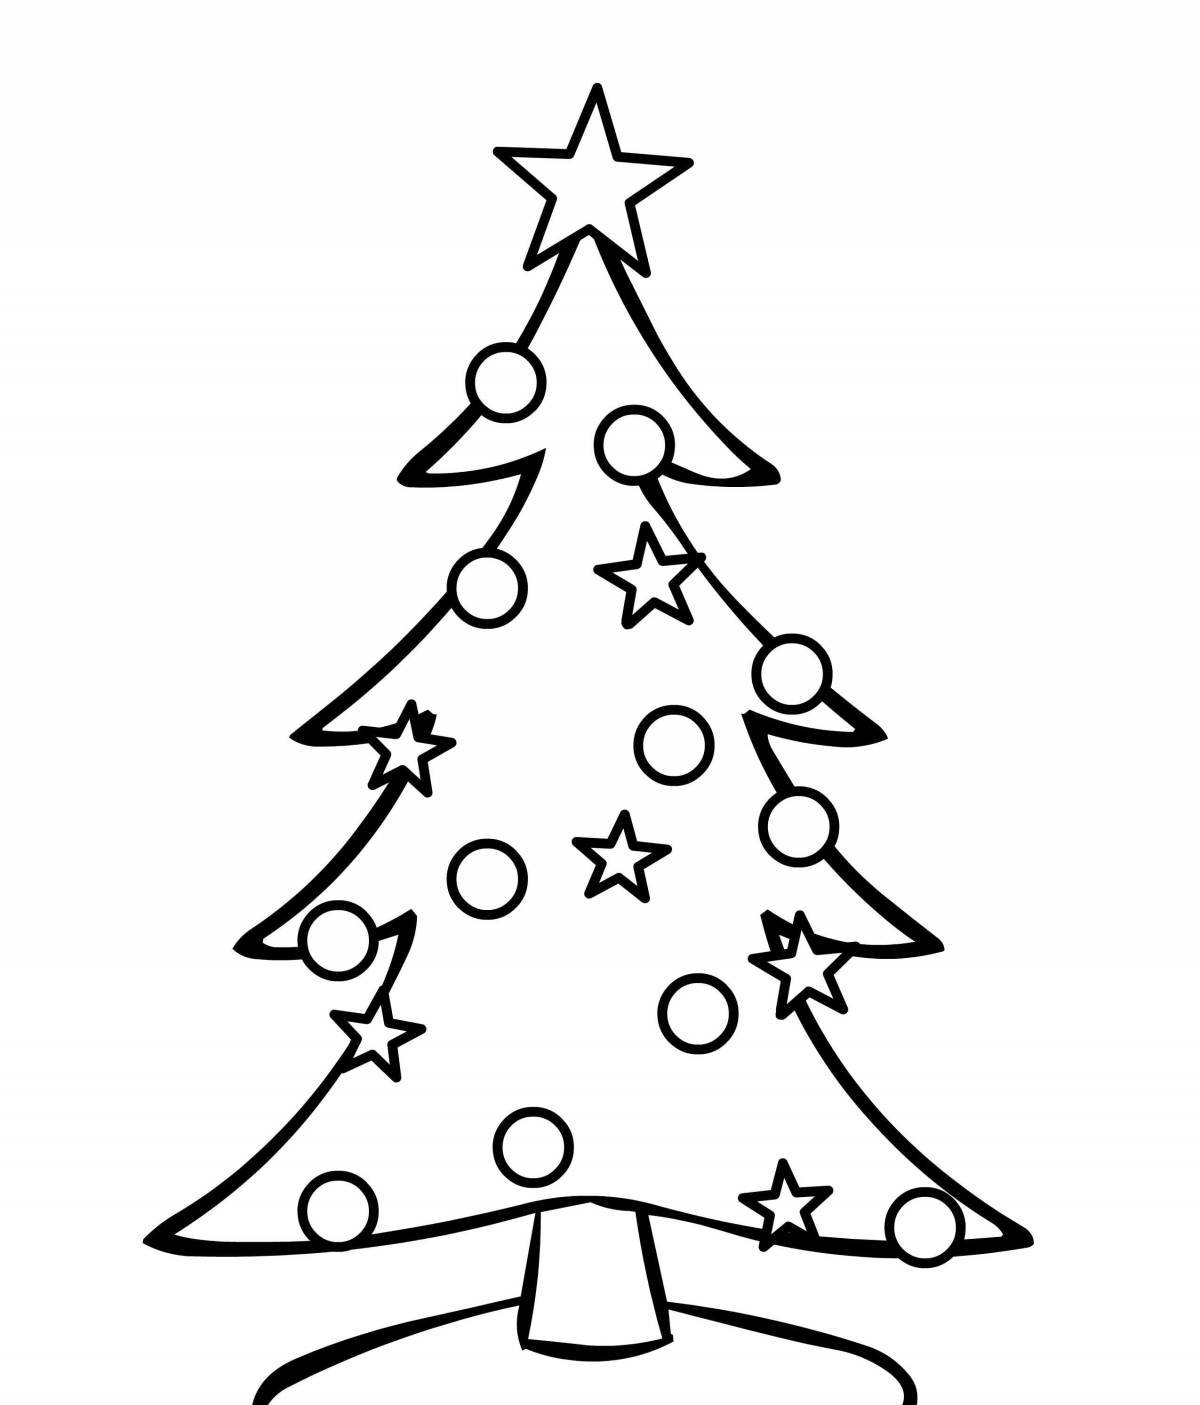 Завораживающая раскраска рождественской елки для детей 3-4 лет